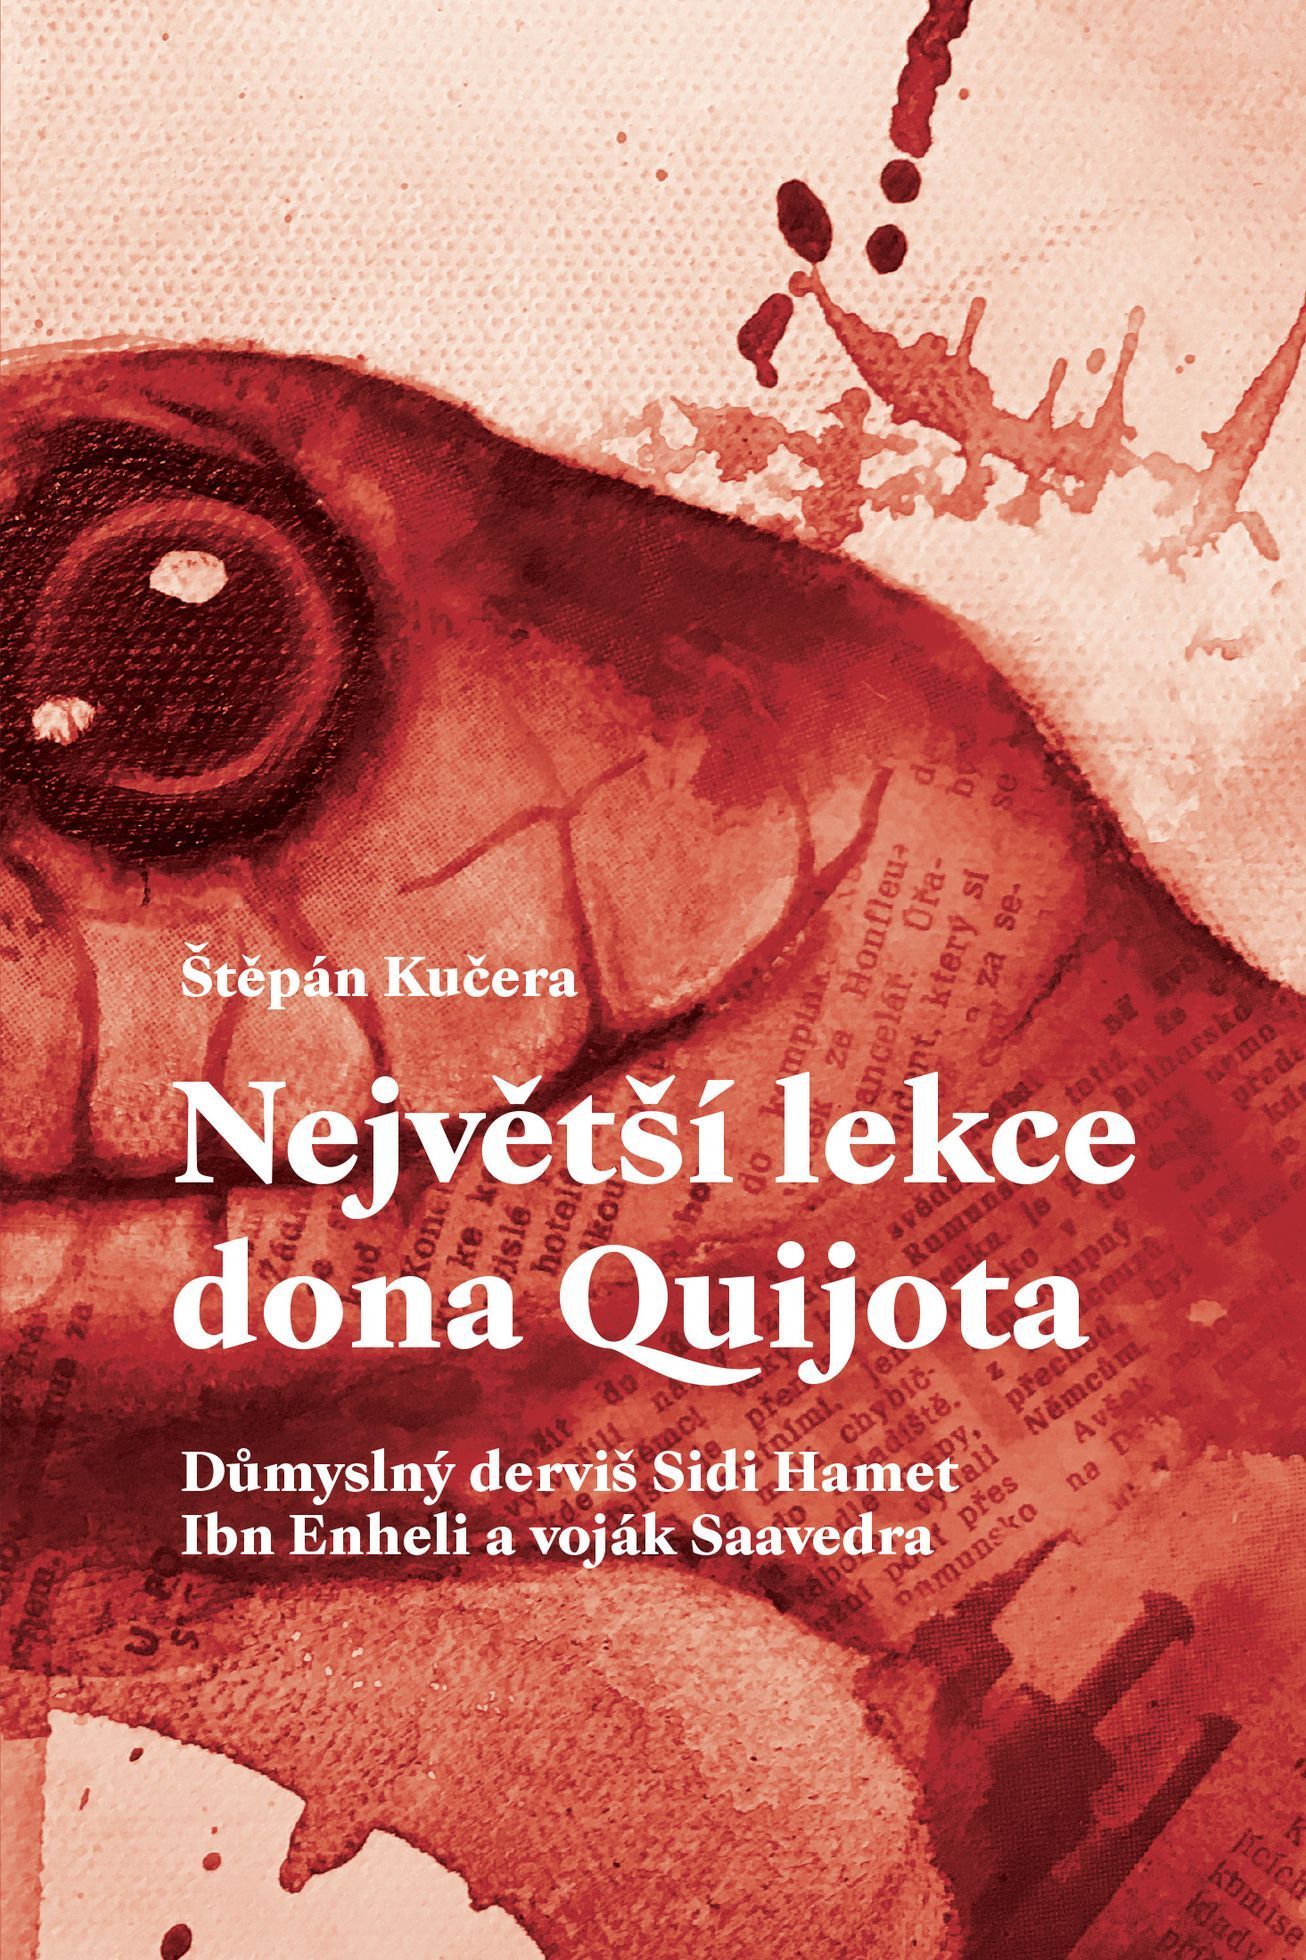 Štěpán Kučera: Největší lekce dona Quijota